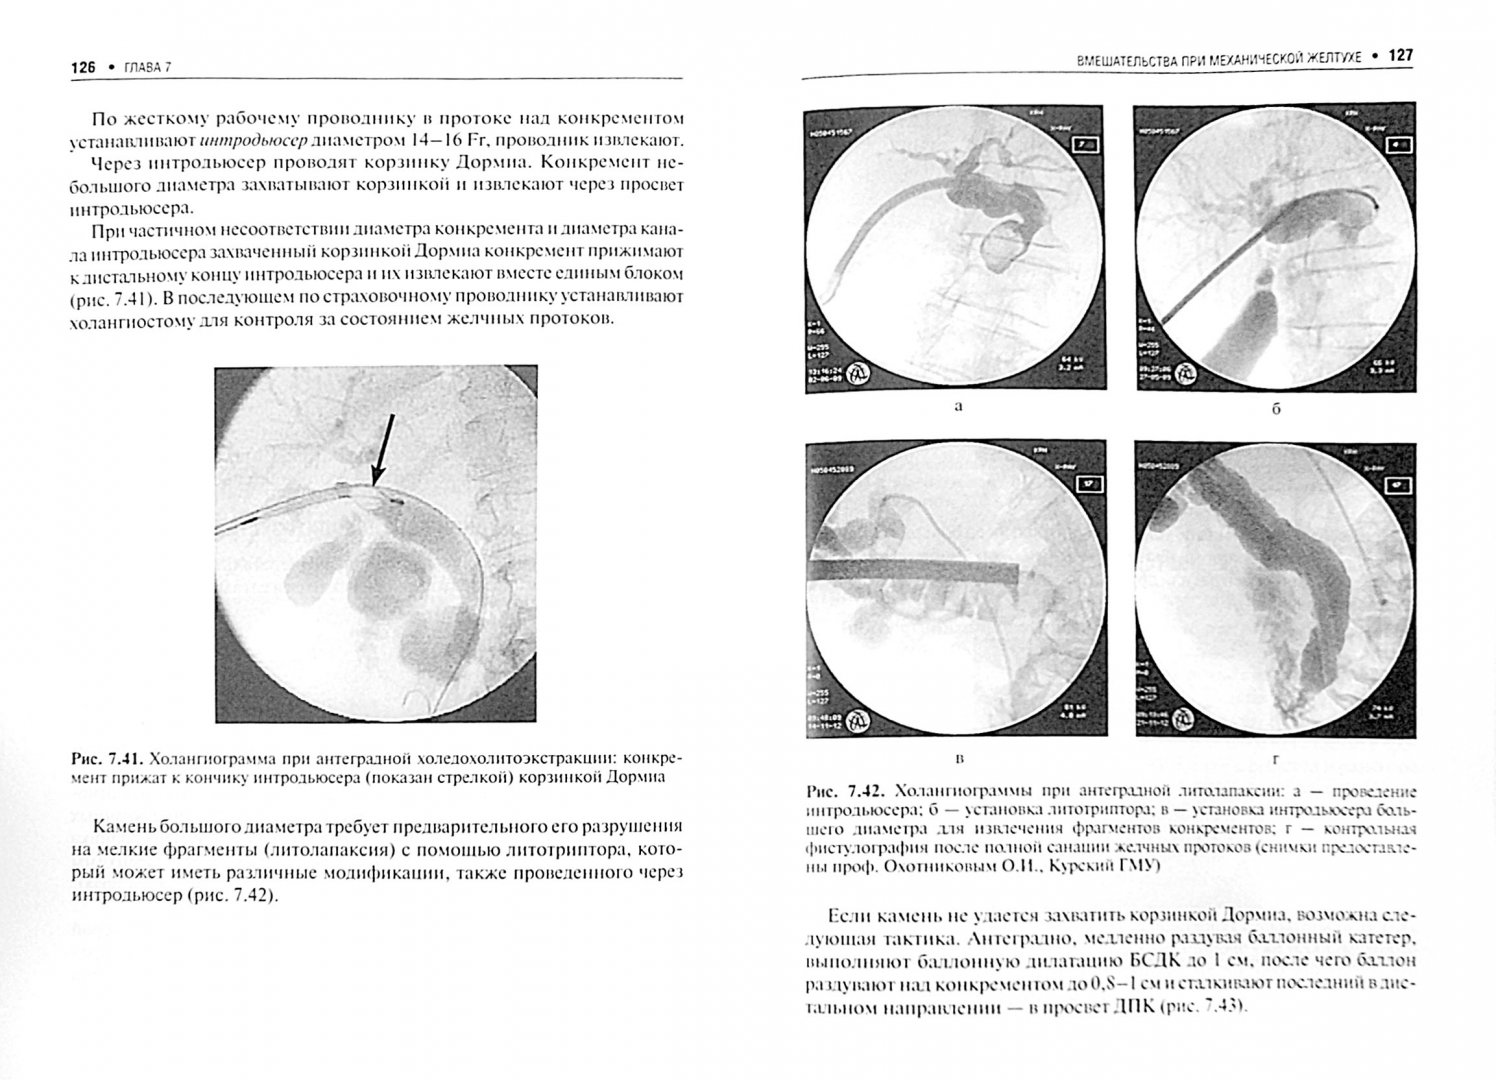 Иллюстрация 1 из 5 для Чрескожные вмешательства в абдоминальной хирургии - Кулезнева, Израилов, Мусаев | Лабиринт - книги. Источник: Лабиринт